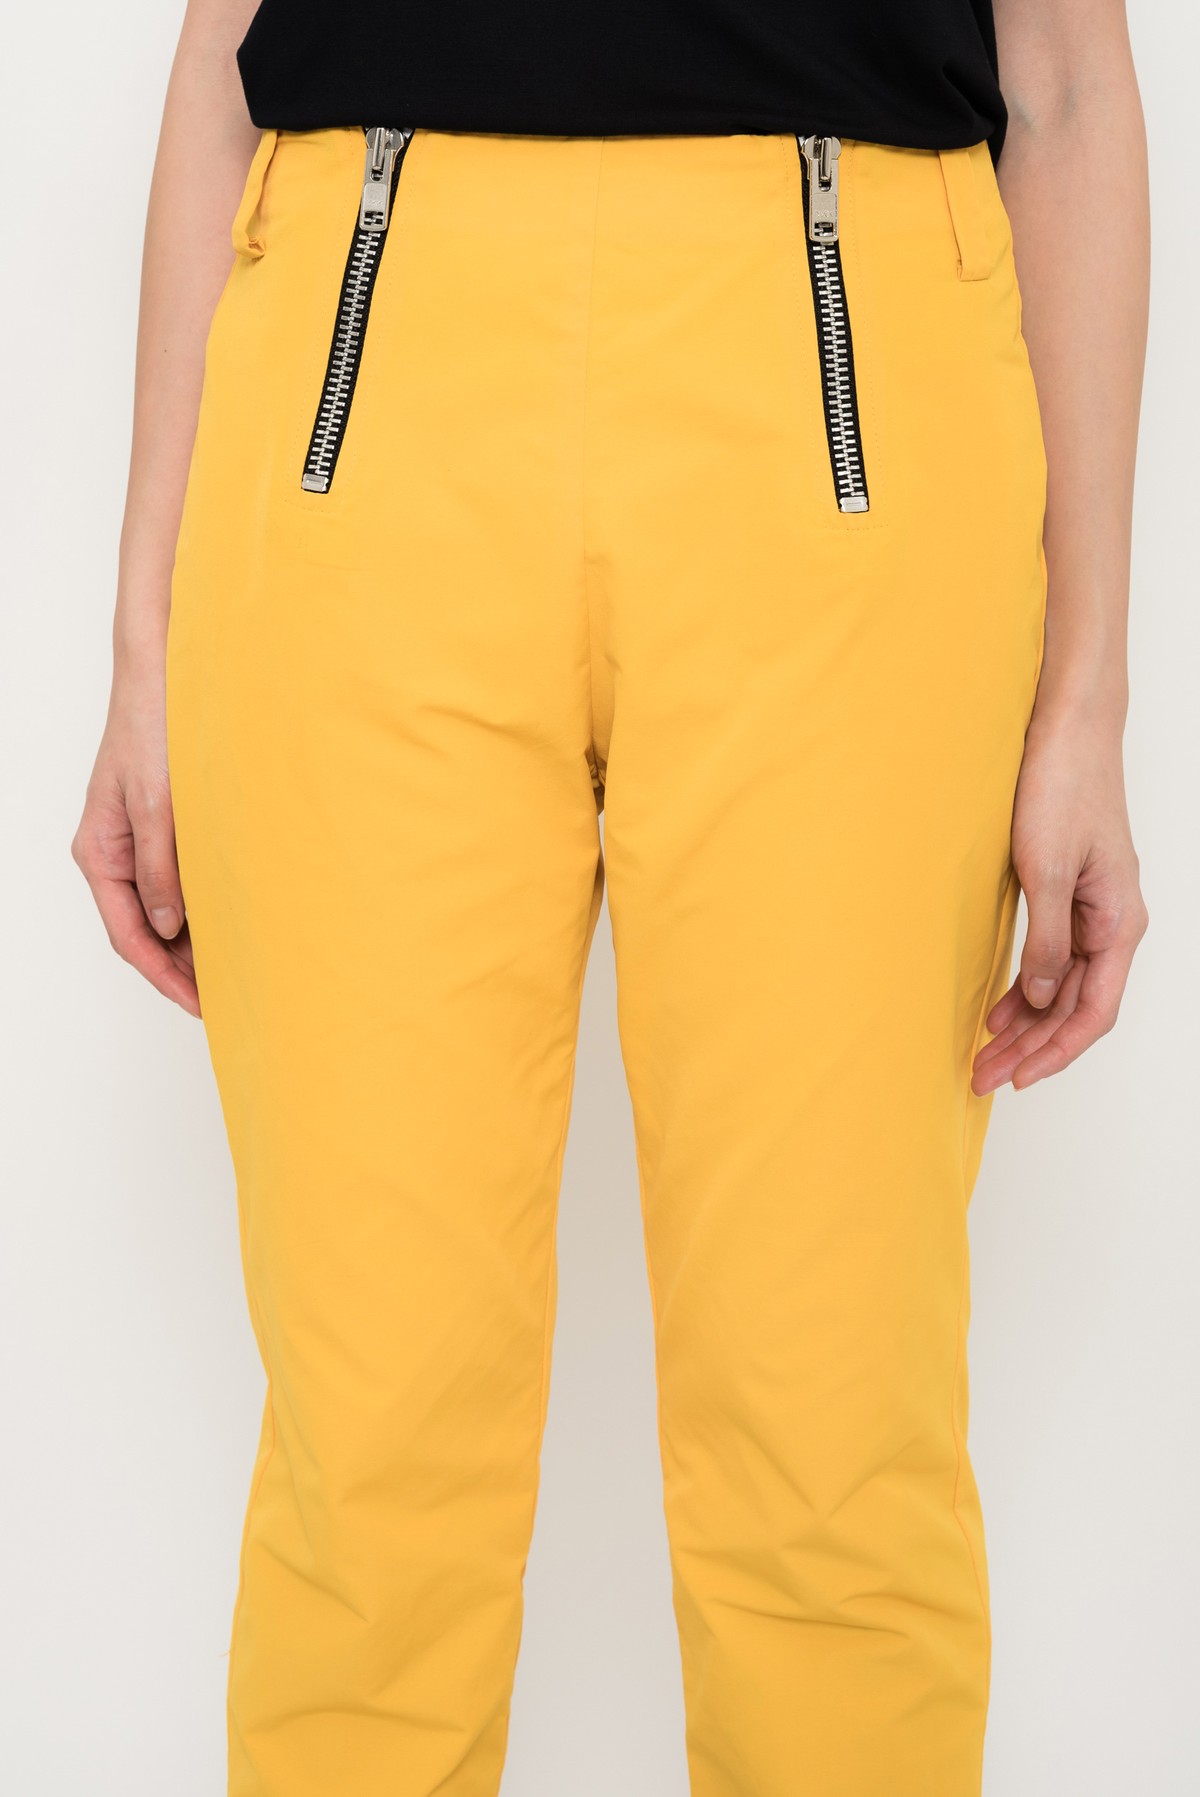 calça reta esportiva com maxi zíper | tailored sport pants with zippers